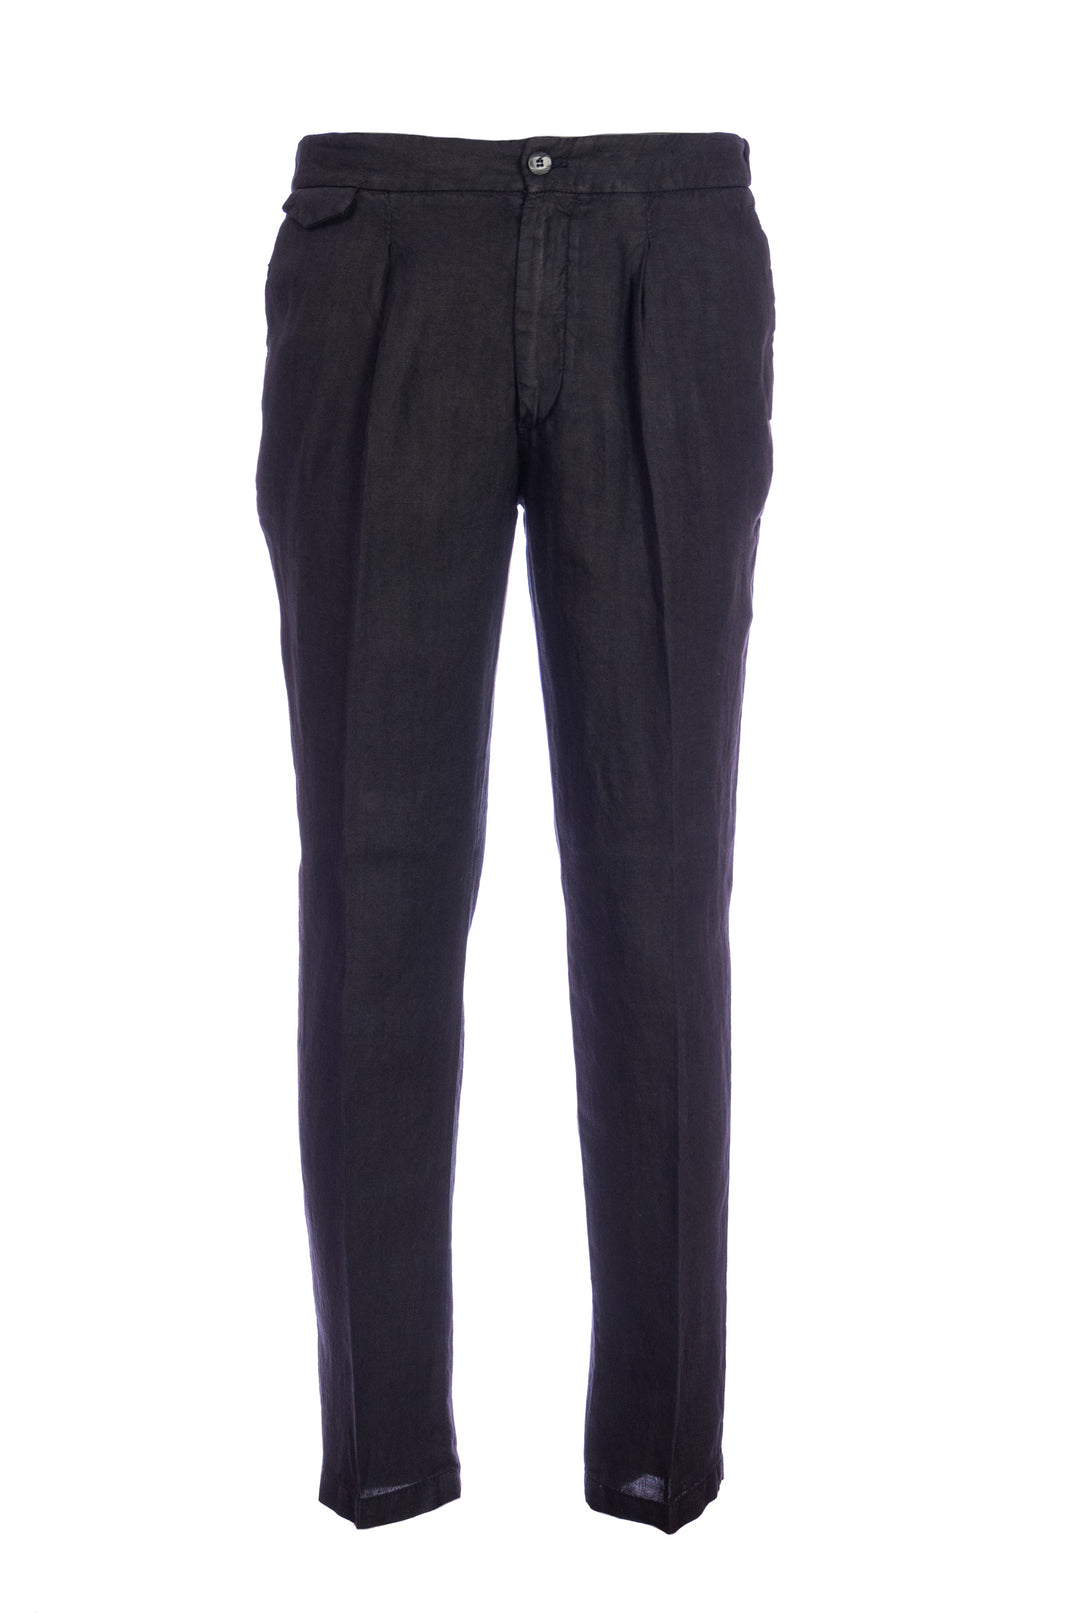 DEVORE Pantalone leggero nero in lino con una pence - Mancinelli 1954